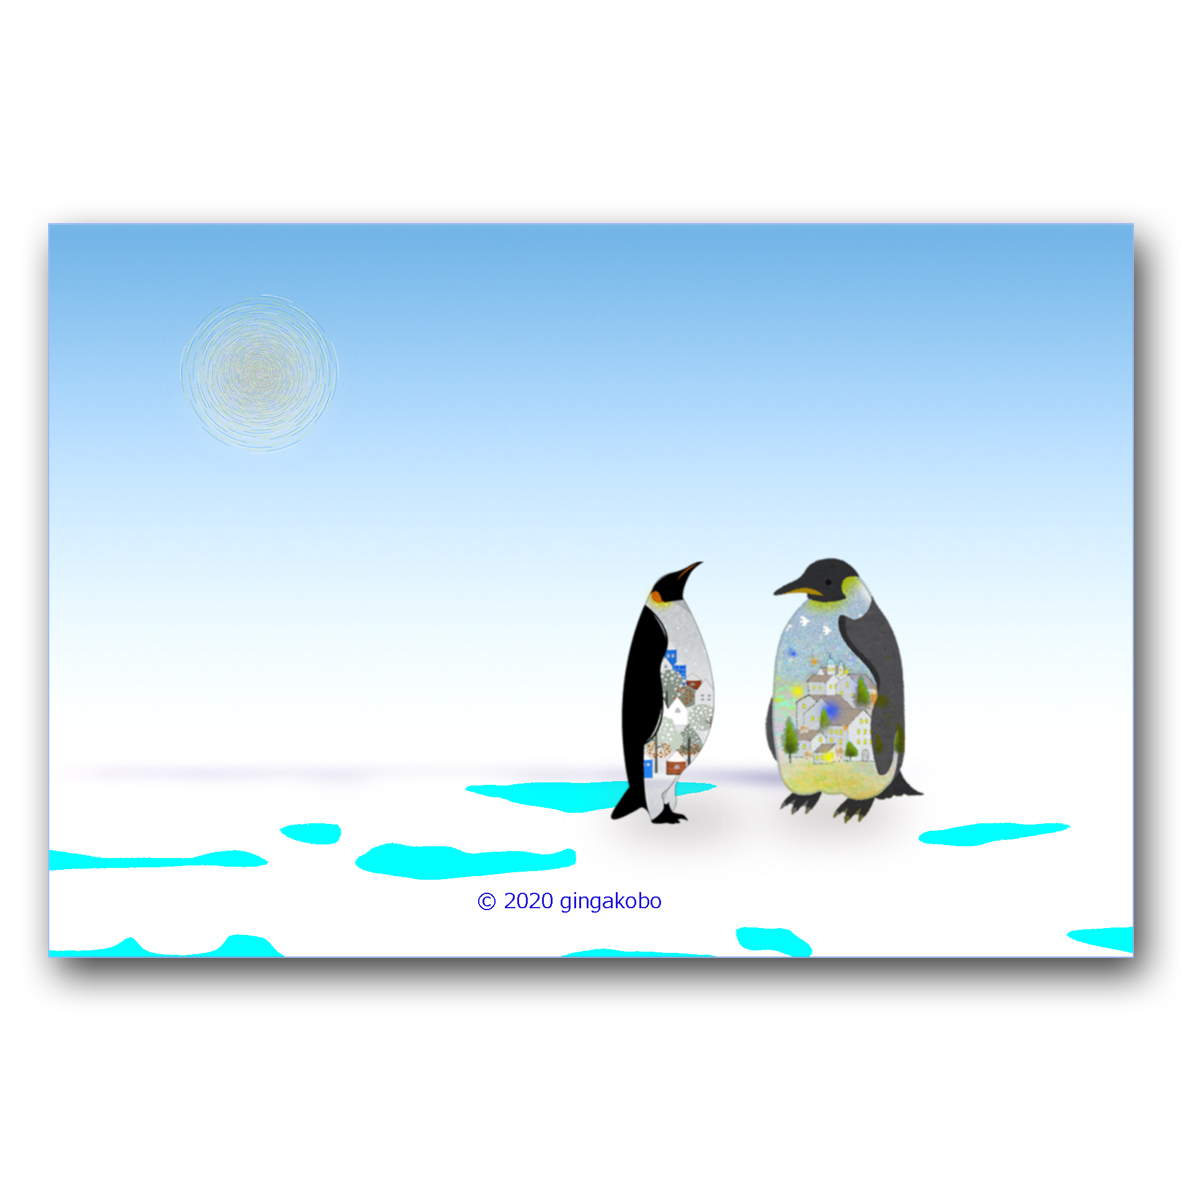 北欧柄のペンギンのあのね話 ほっこり癒しのイラストポストカード2枚組 No 941 Iichi ハンドメイド クラフト作品 手仕事品の通販